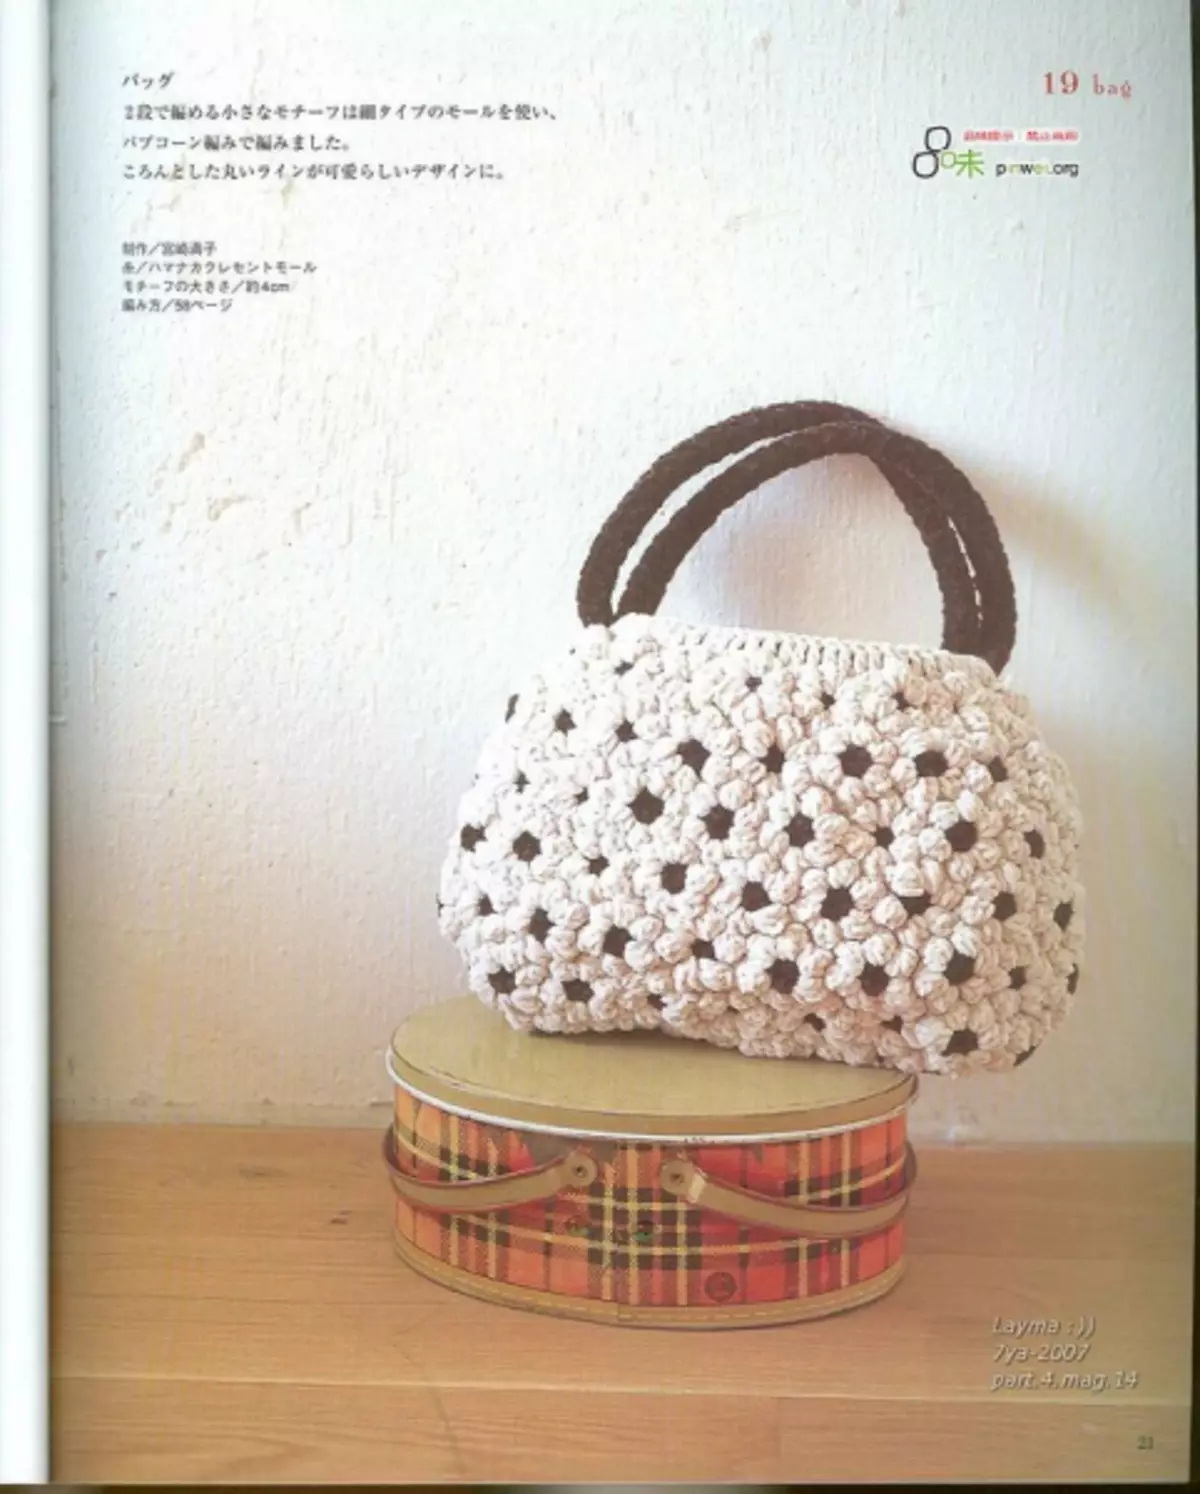 钩针编织。日本杂志